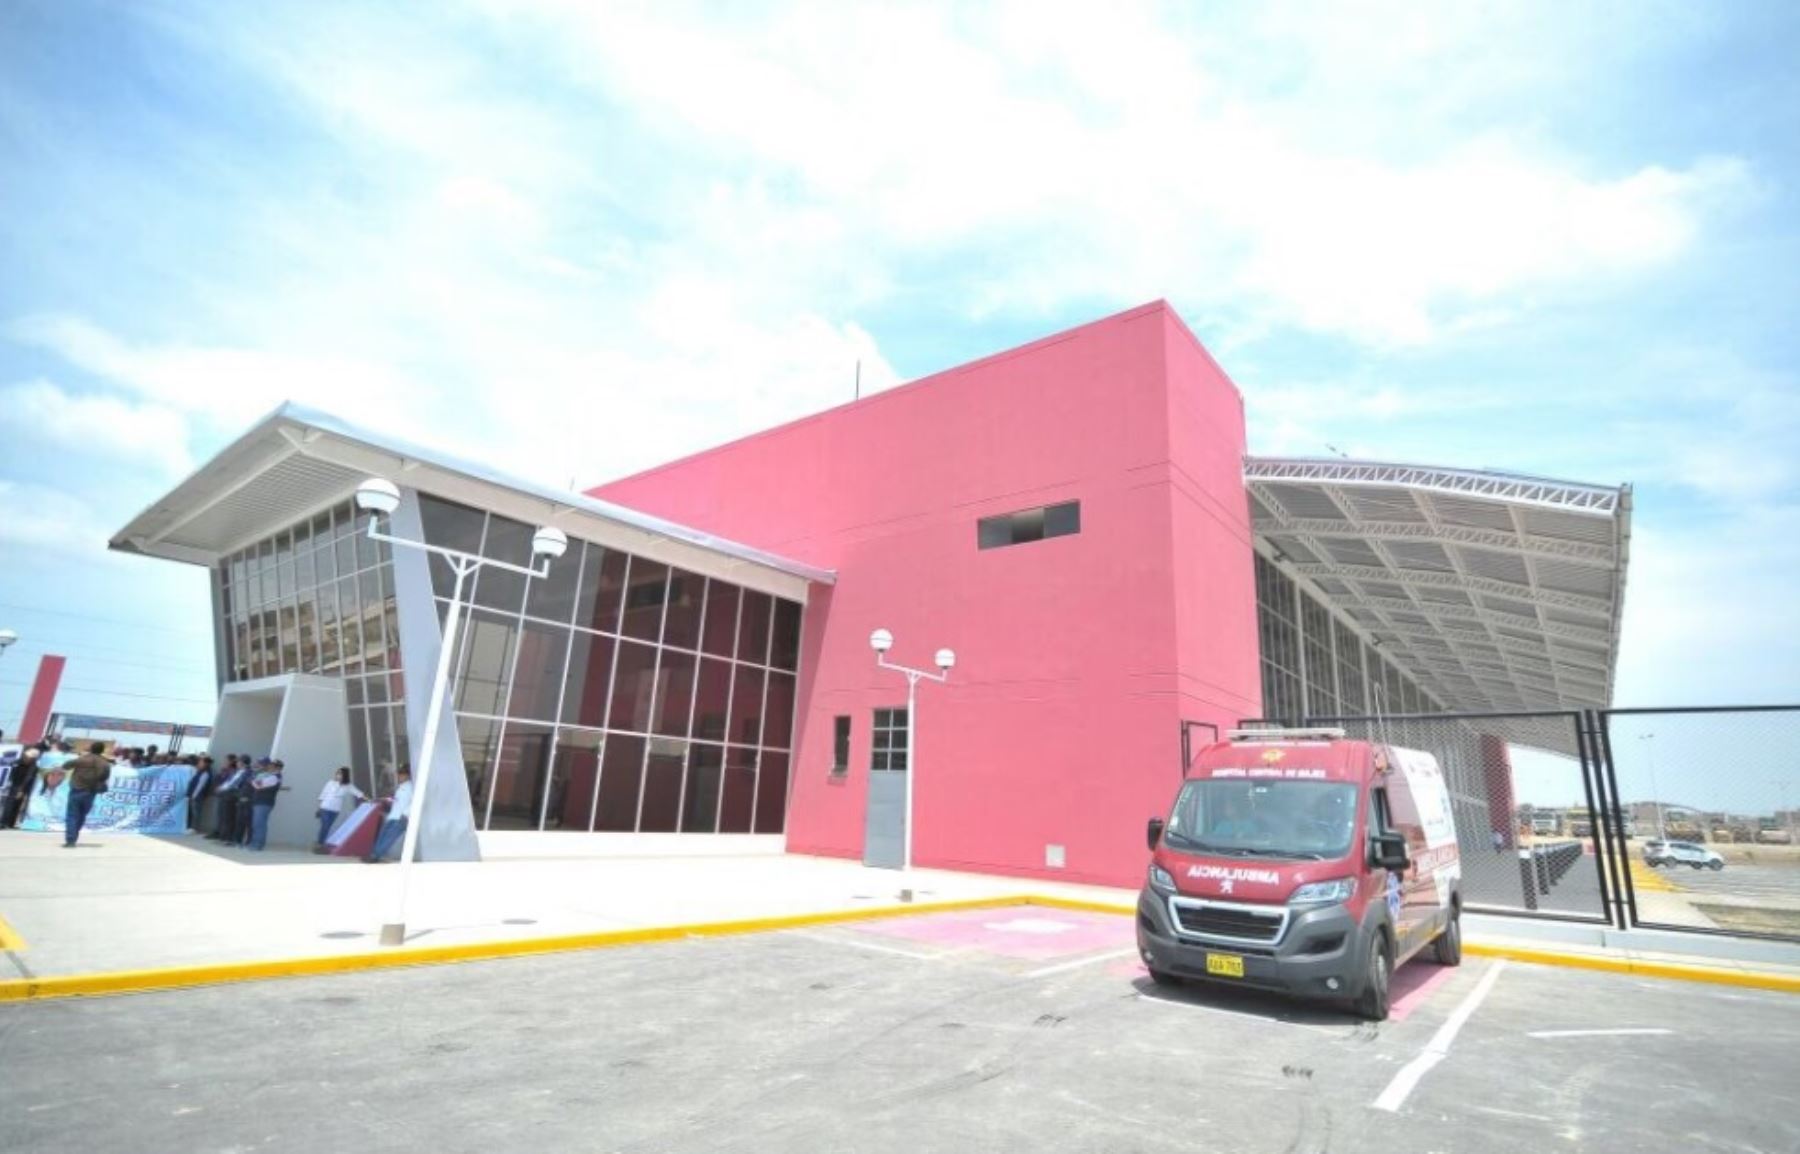 La gobernadora regional de Arequipa, Yamila Osorio, inauguró hoy el nuevo y moderno terminal para el transporte terrestre interprovincial en la ciudad de Majes, provincia de Caylloma, que permitirá una eficiente prestación del servicio de embarque y desembarque de pasajeros y carga en esa jurisdicción.